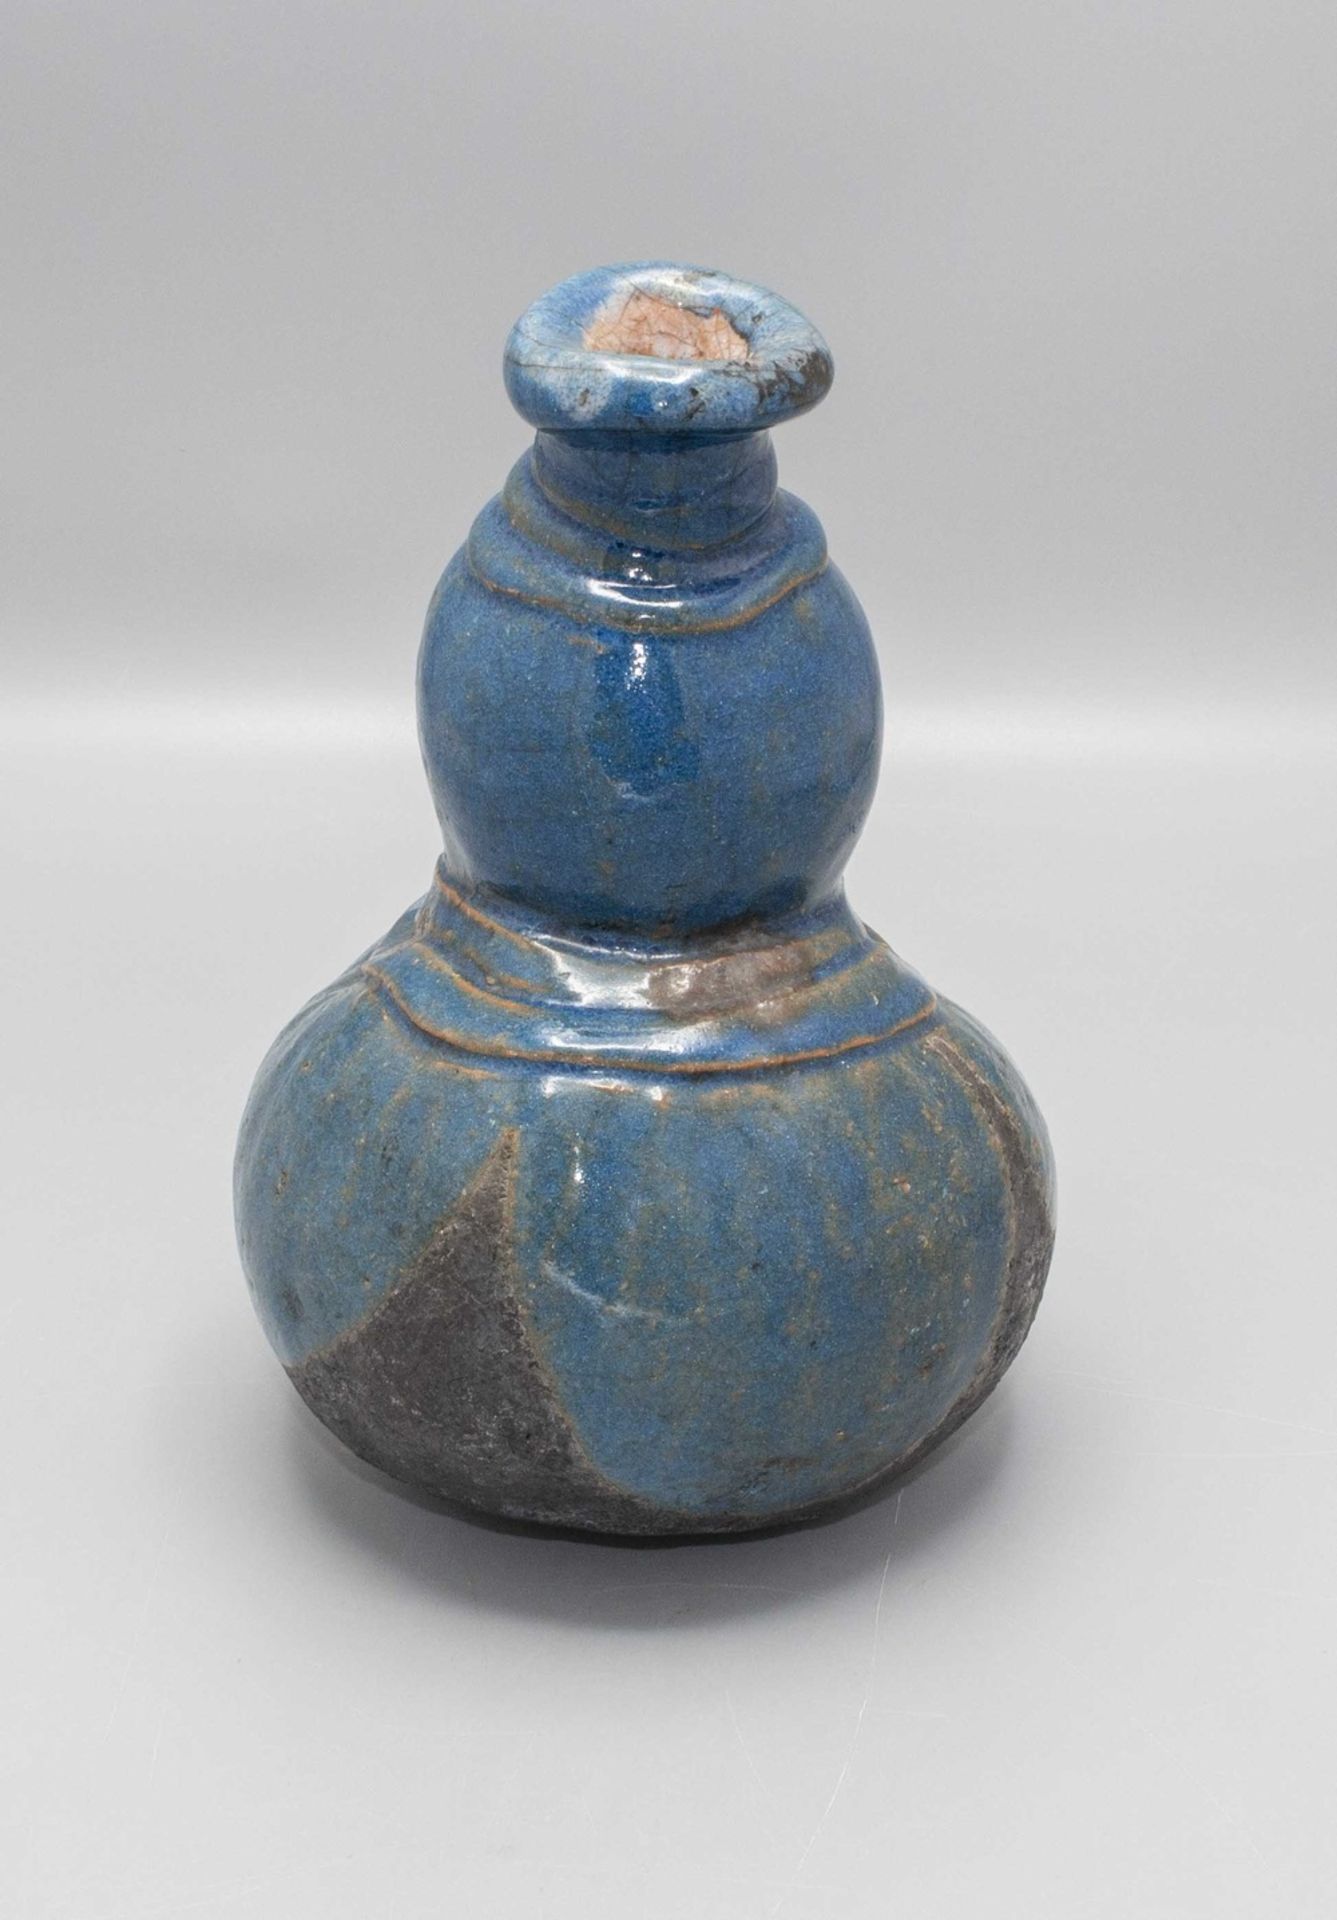 Vase Studiokeramik / A studio ceramic vase, 20. Jh. - Bild 3 aus 6